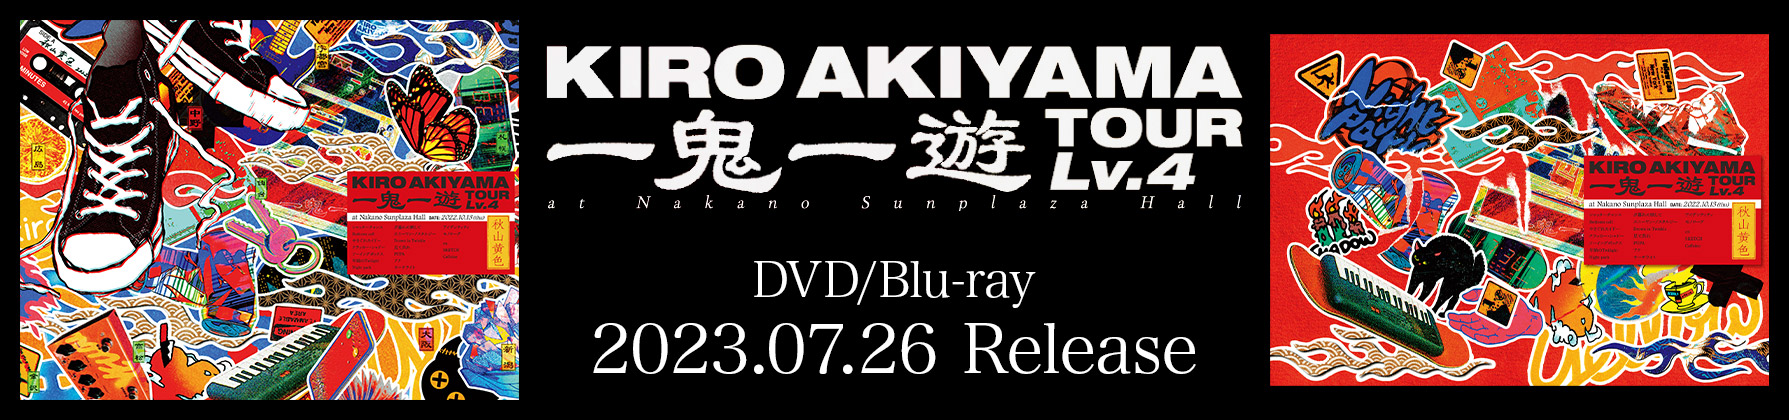 「一鬼一遊TOUR Lv.4 at Nakano Sunplaza Hall」2023.07.26 Release